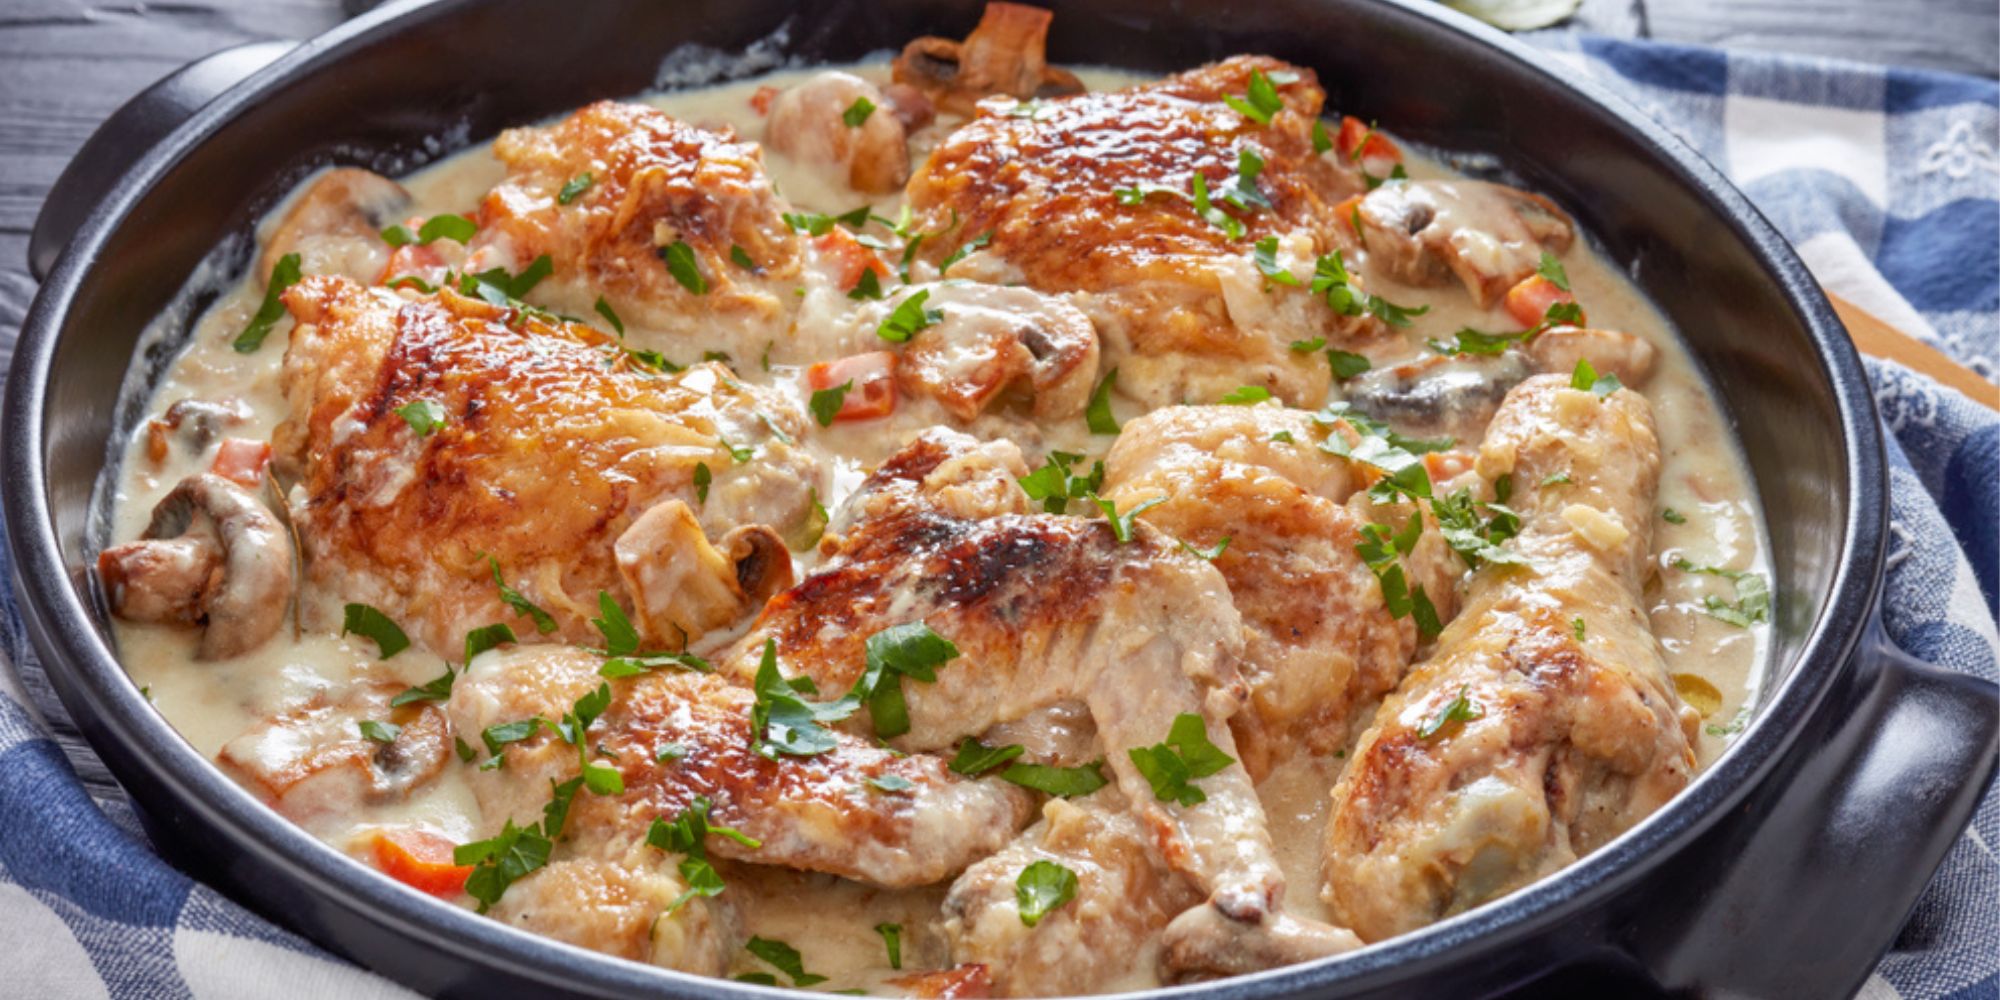 Fixa pangmiddag på skral kassa – bjud på kyckling i vitvinssås!